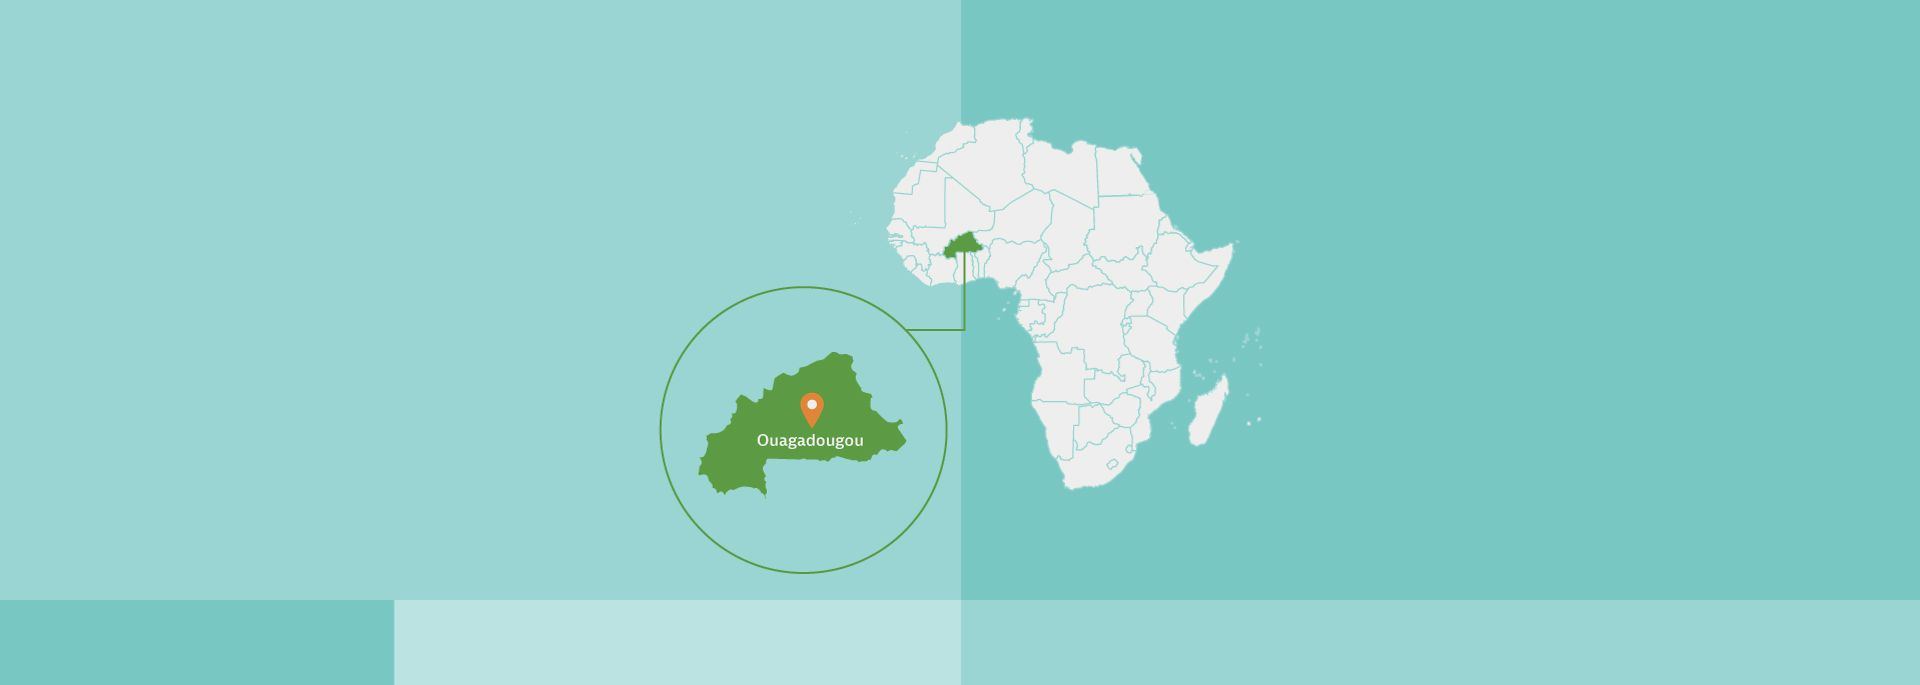 Afrikakarte, Burkina Faso